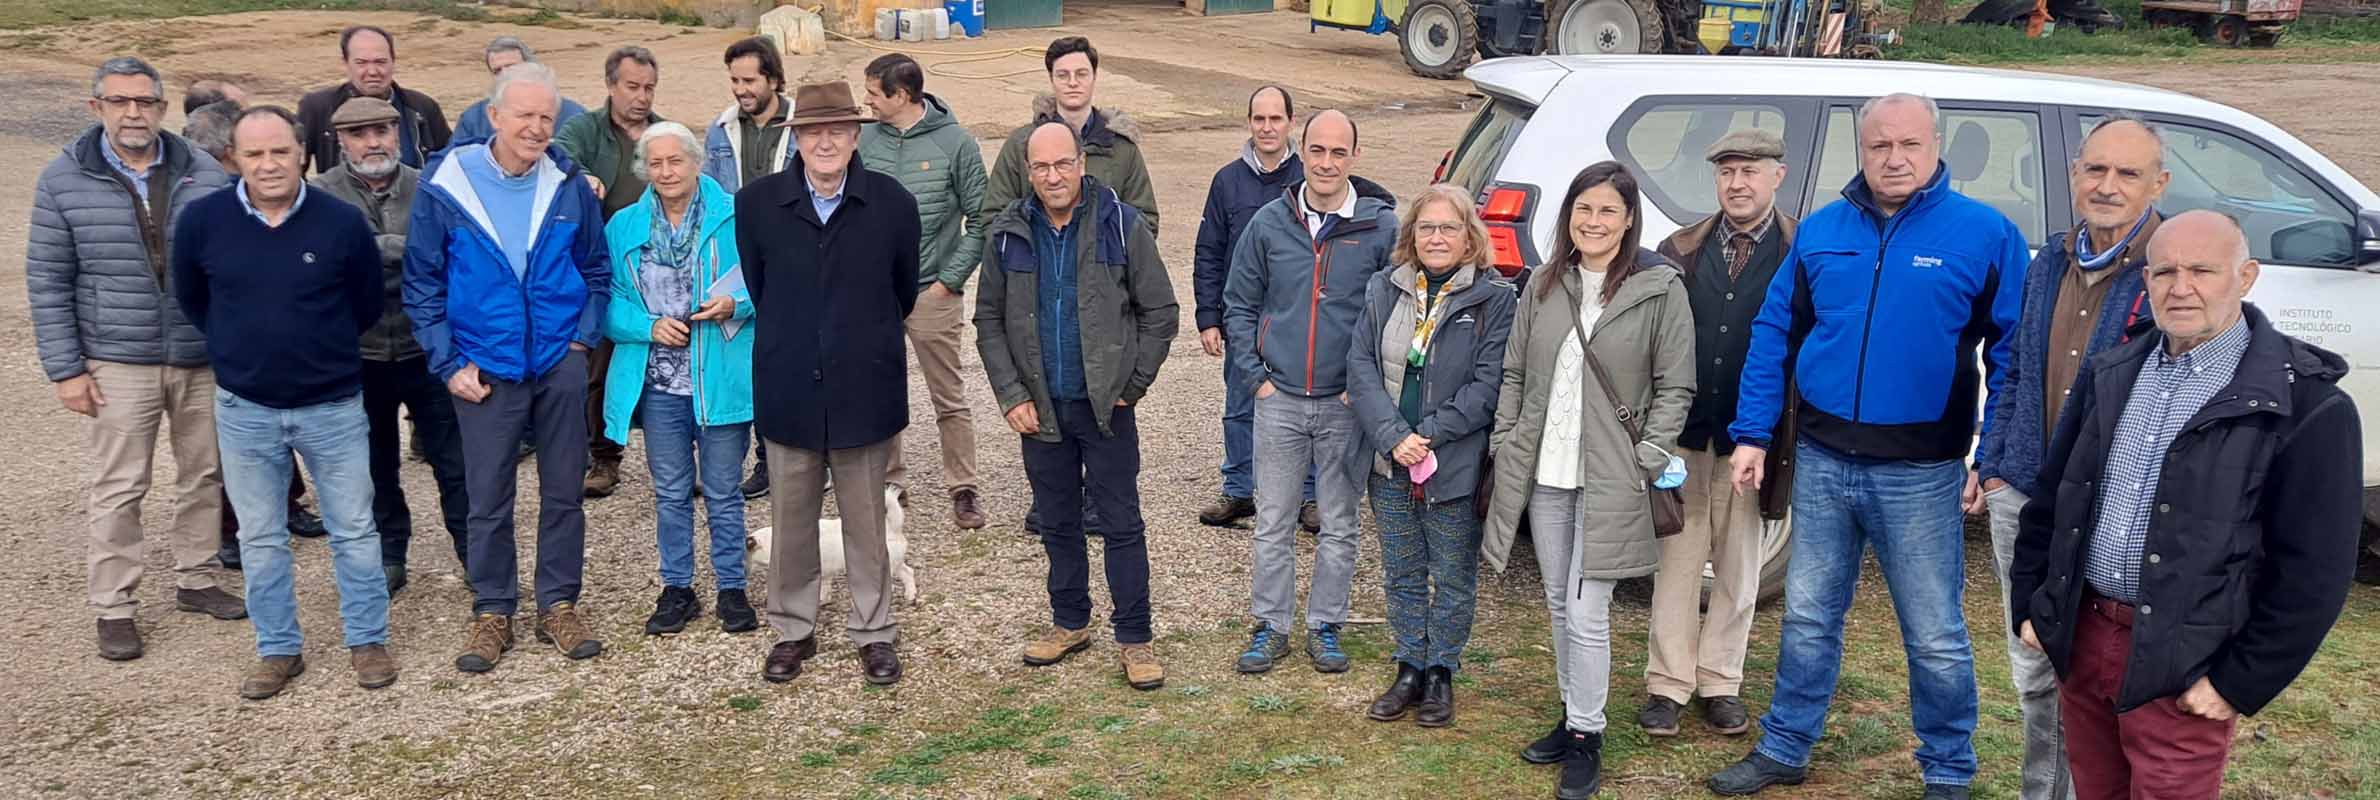 Agricultores de AVAC acompañaron a los investigadores australianos en su visita a las explotaciones de Agricultura de Conservación vallisoletanas. La foto refleja el momento del encuentro en la Finca Monte Rocío de Valladolid.